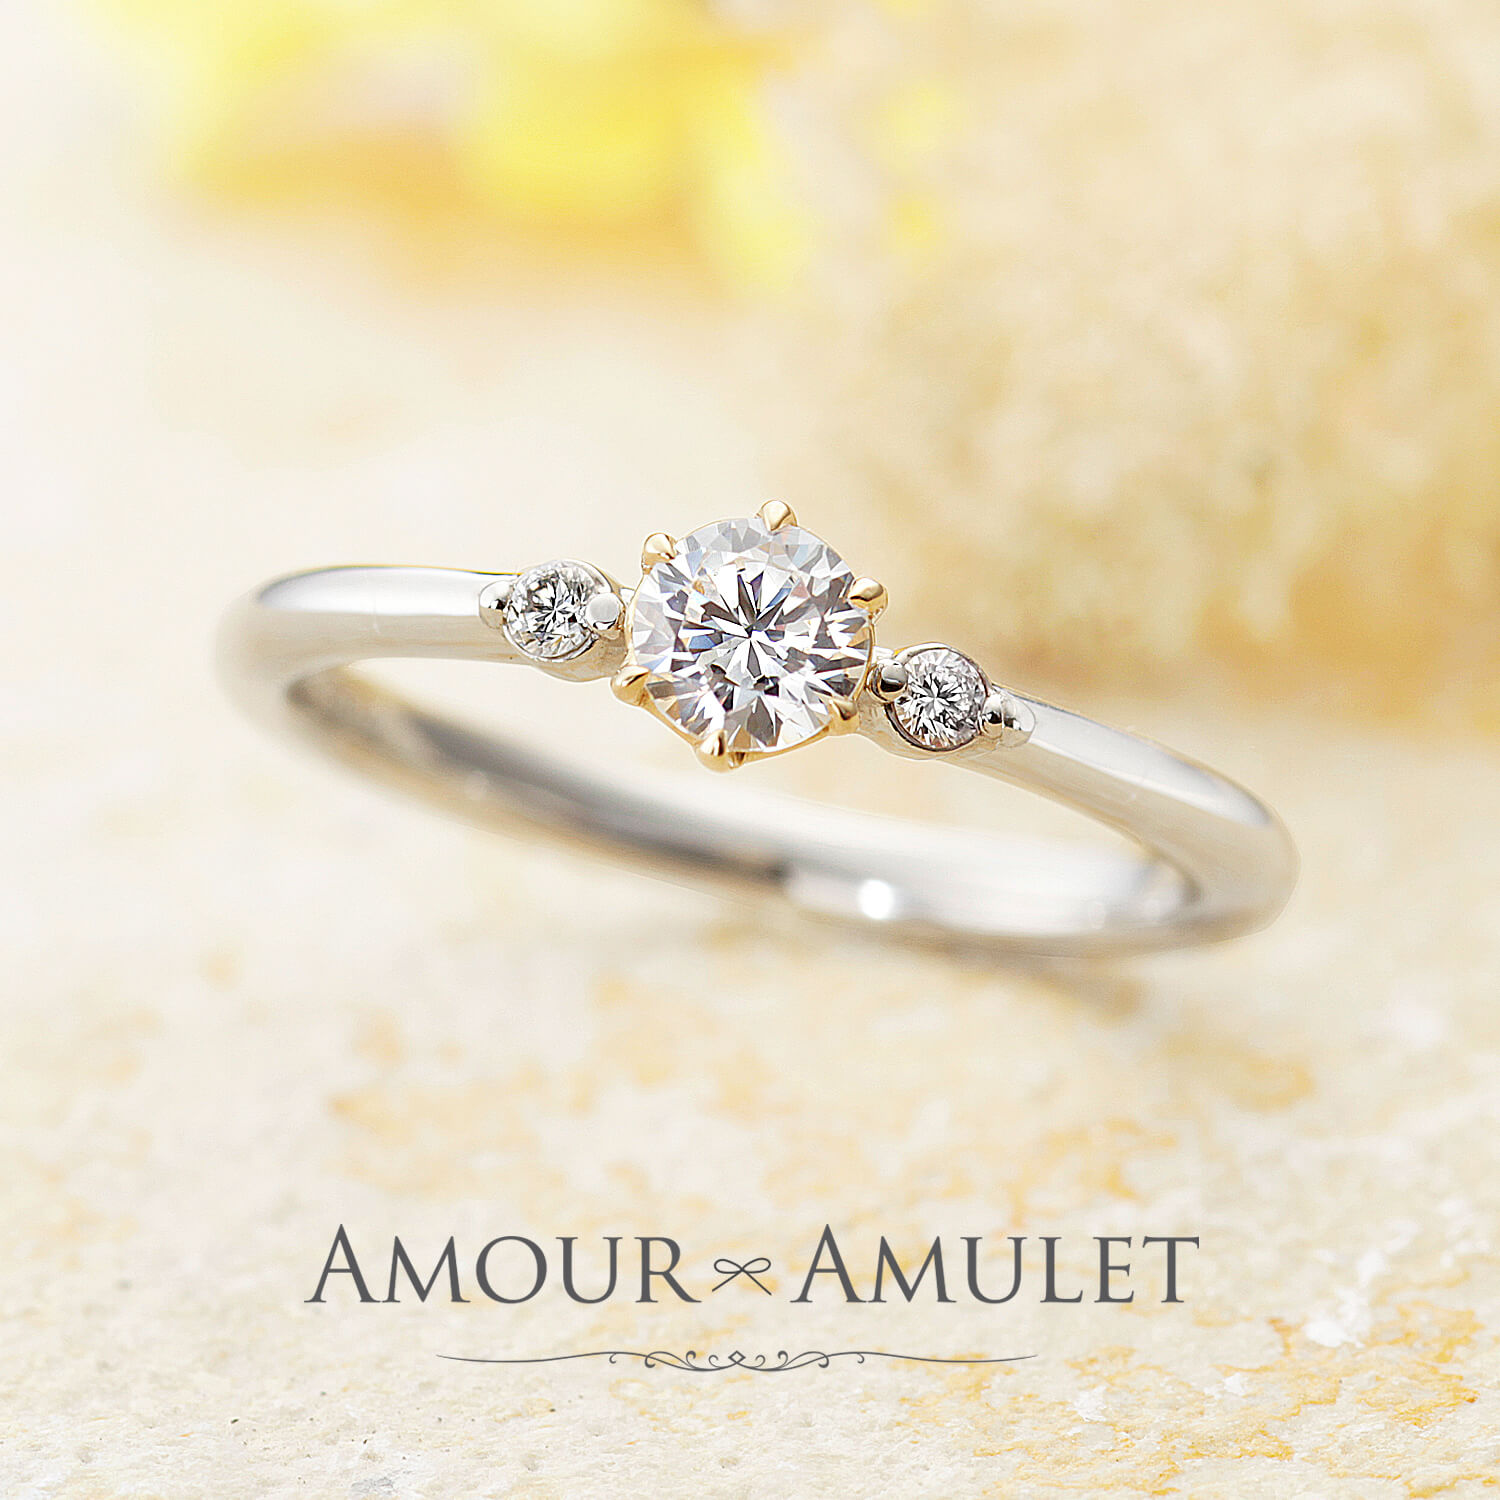 AMOURAMULETアムールアミュレットの婚約指輪FLEURフルール